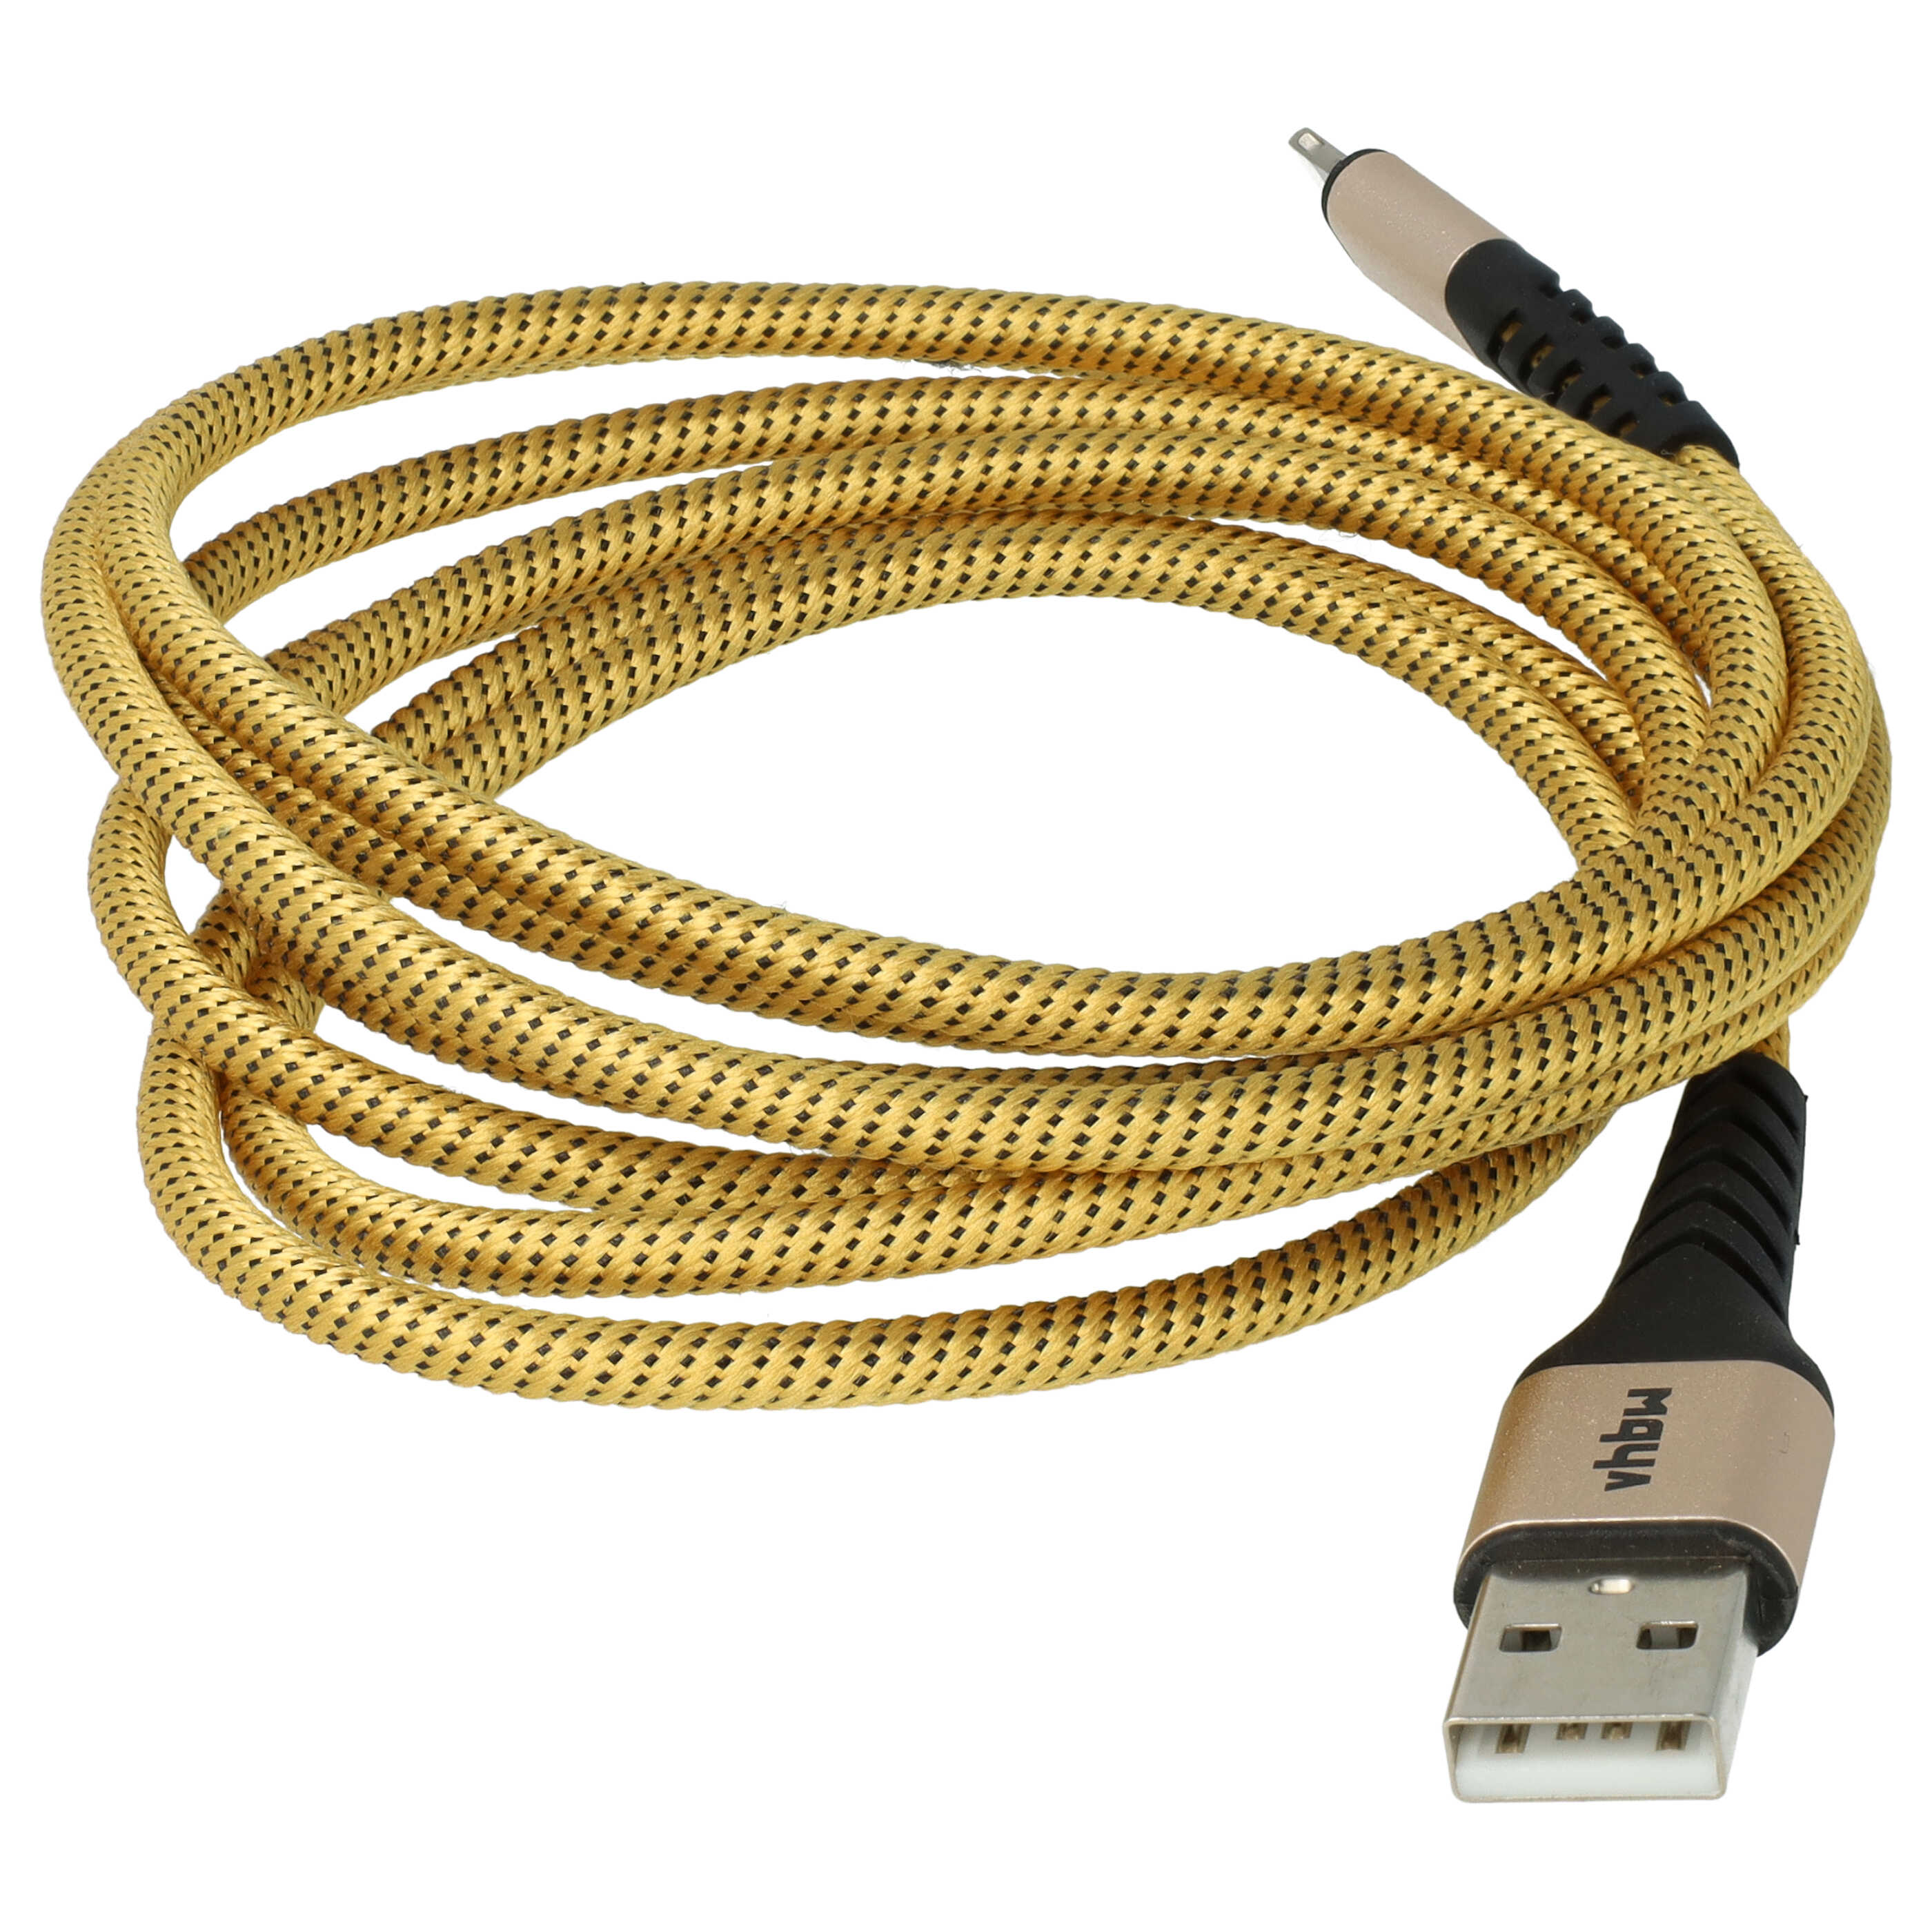 Cable lightning a USB A para dispositivos Apple iOS - negro / amarillo, 180 cm